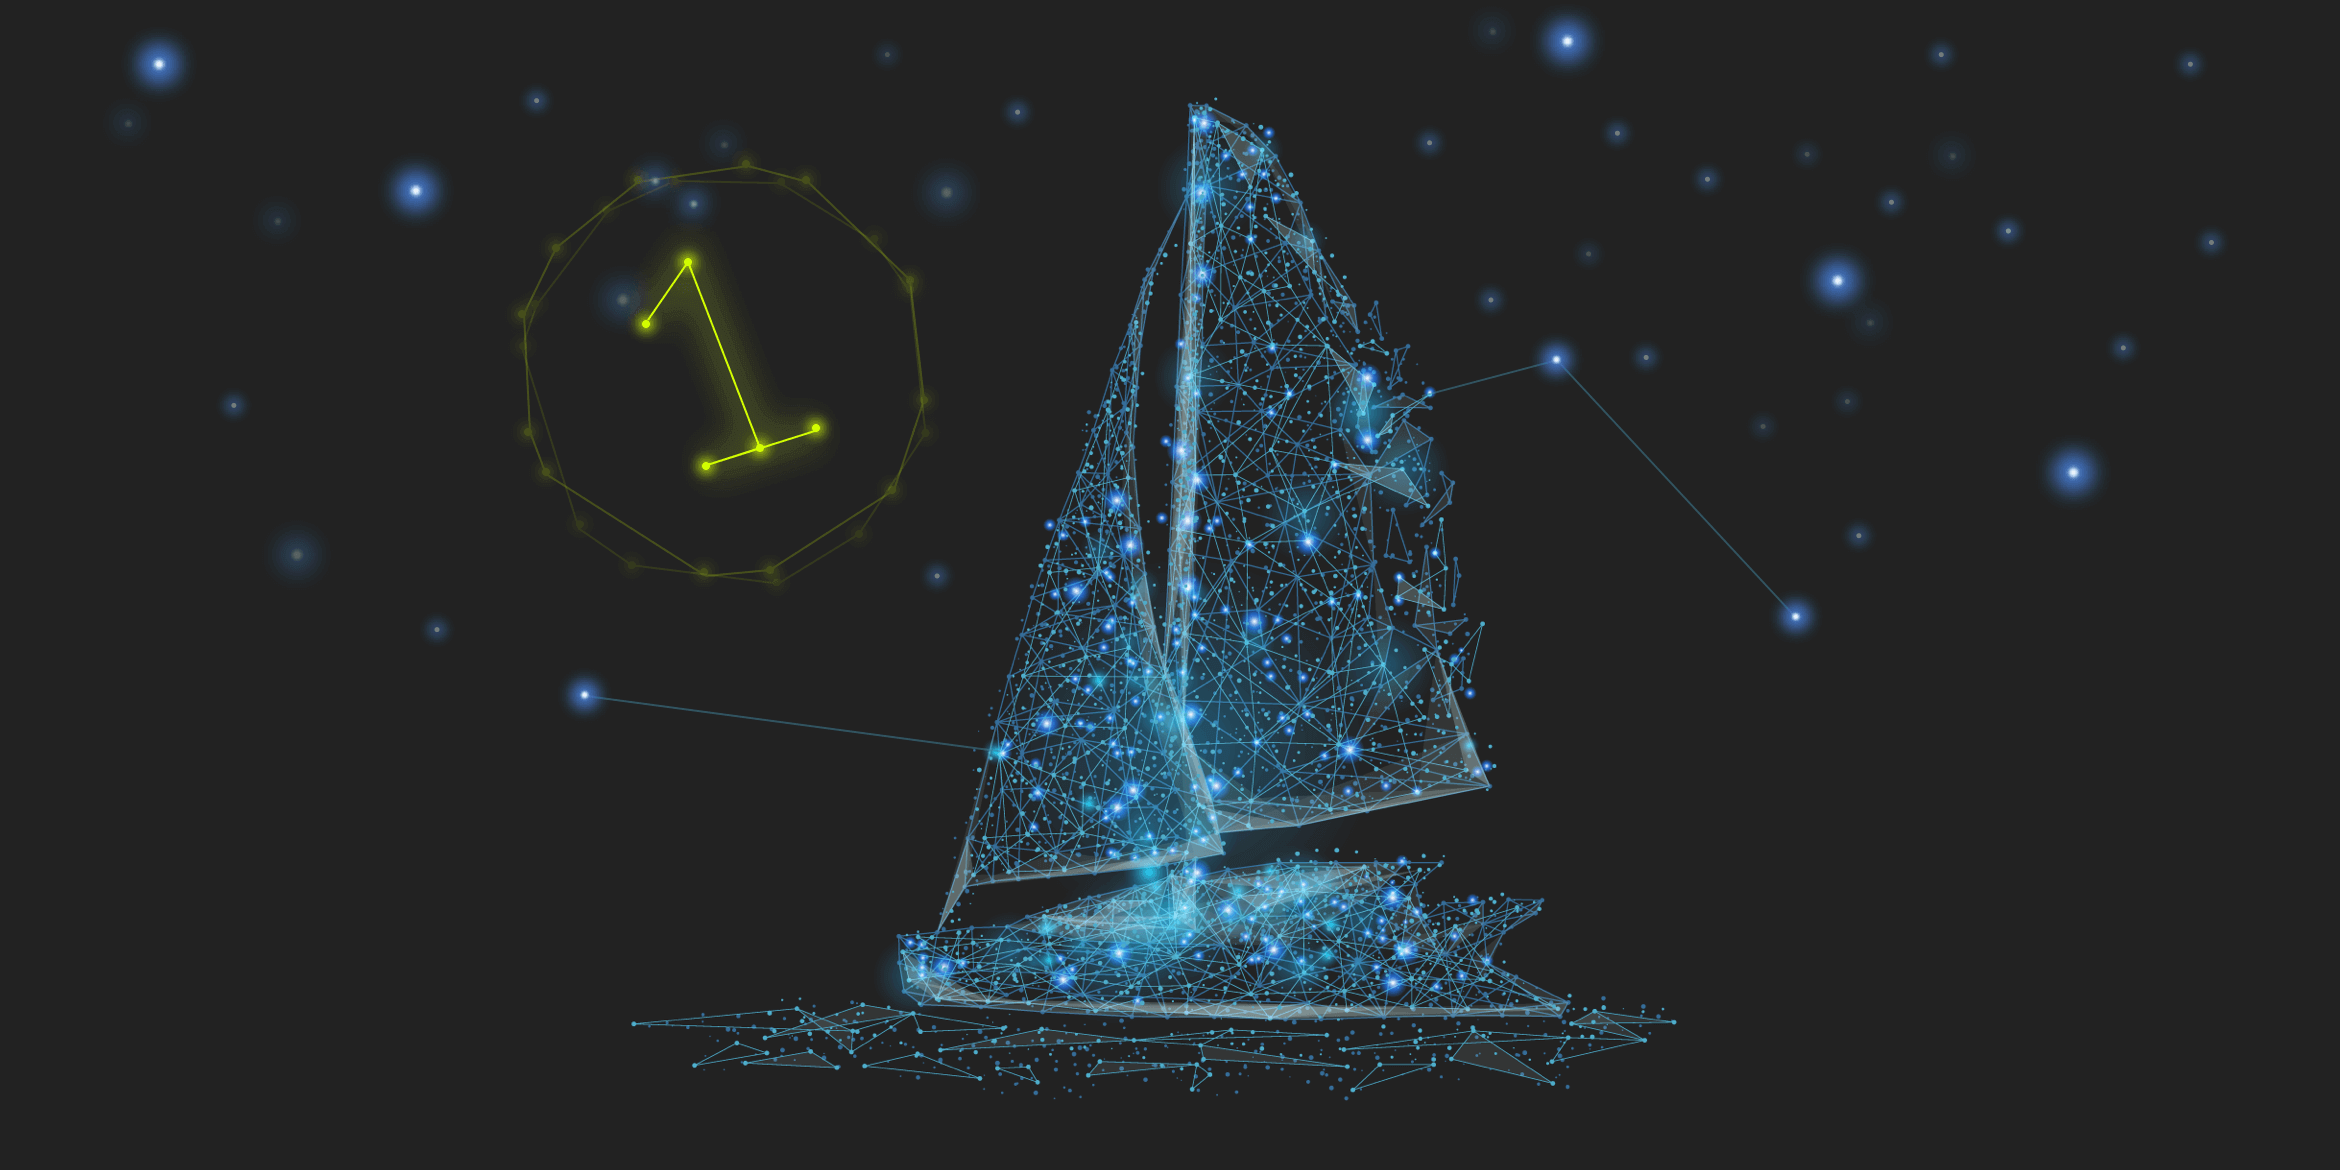 In form eines Sternenbildes mit blauen Sternen dargestelltes Schiff vor einem schwarzen Hintergrund. Links daneben leuchtet eine gelbe 1